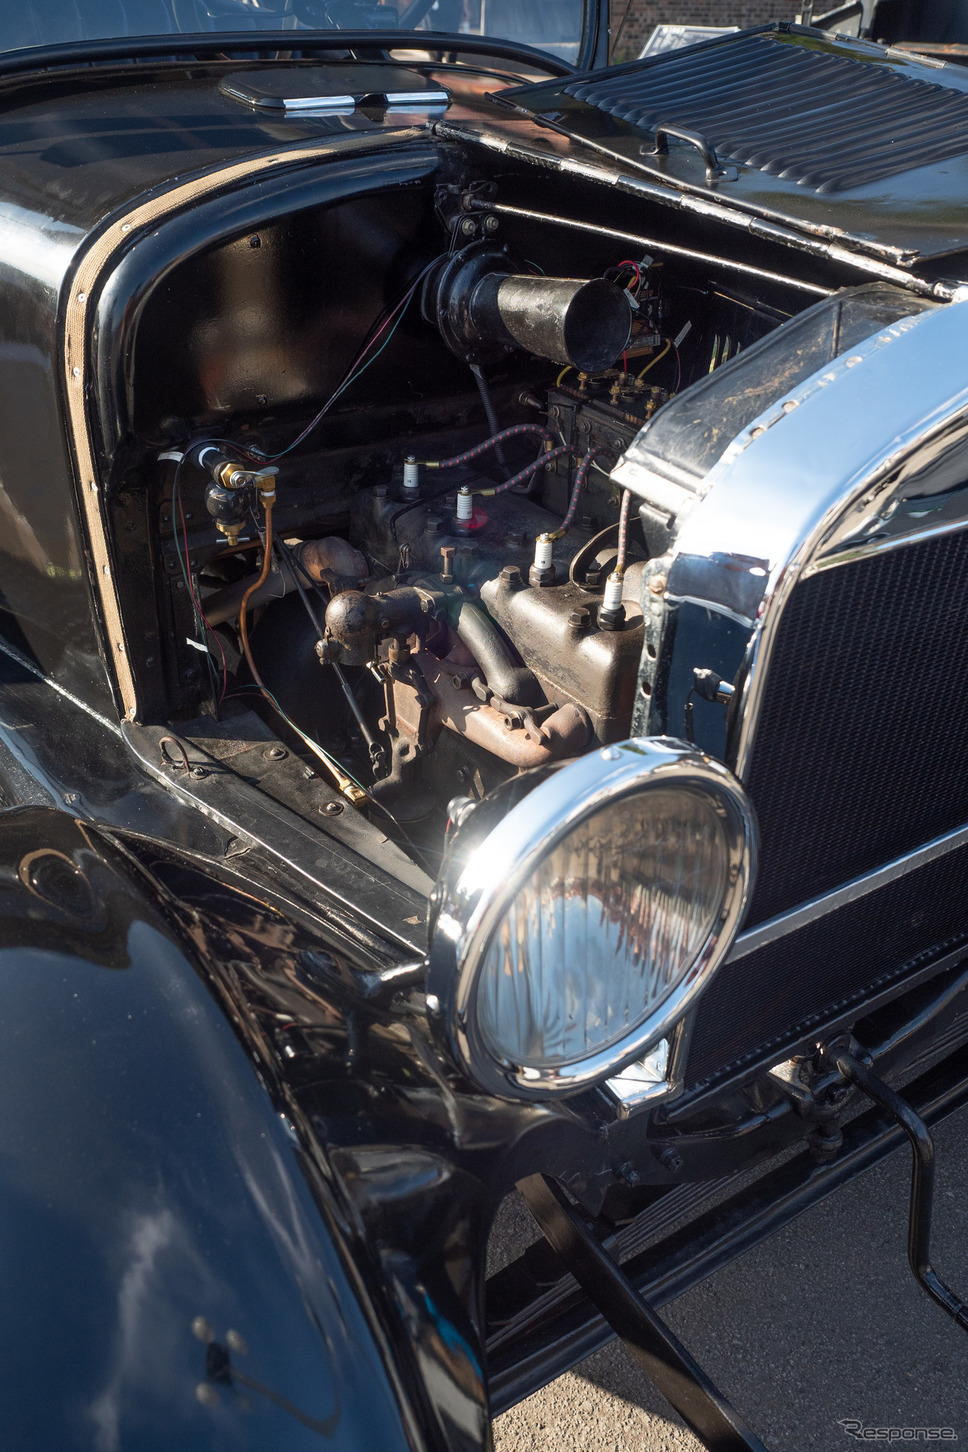 「T型フォード」の心臓部。エンジンスターターはアメリカから取り寄せられた。《写真撮影 佐藤正樹》